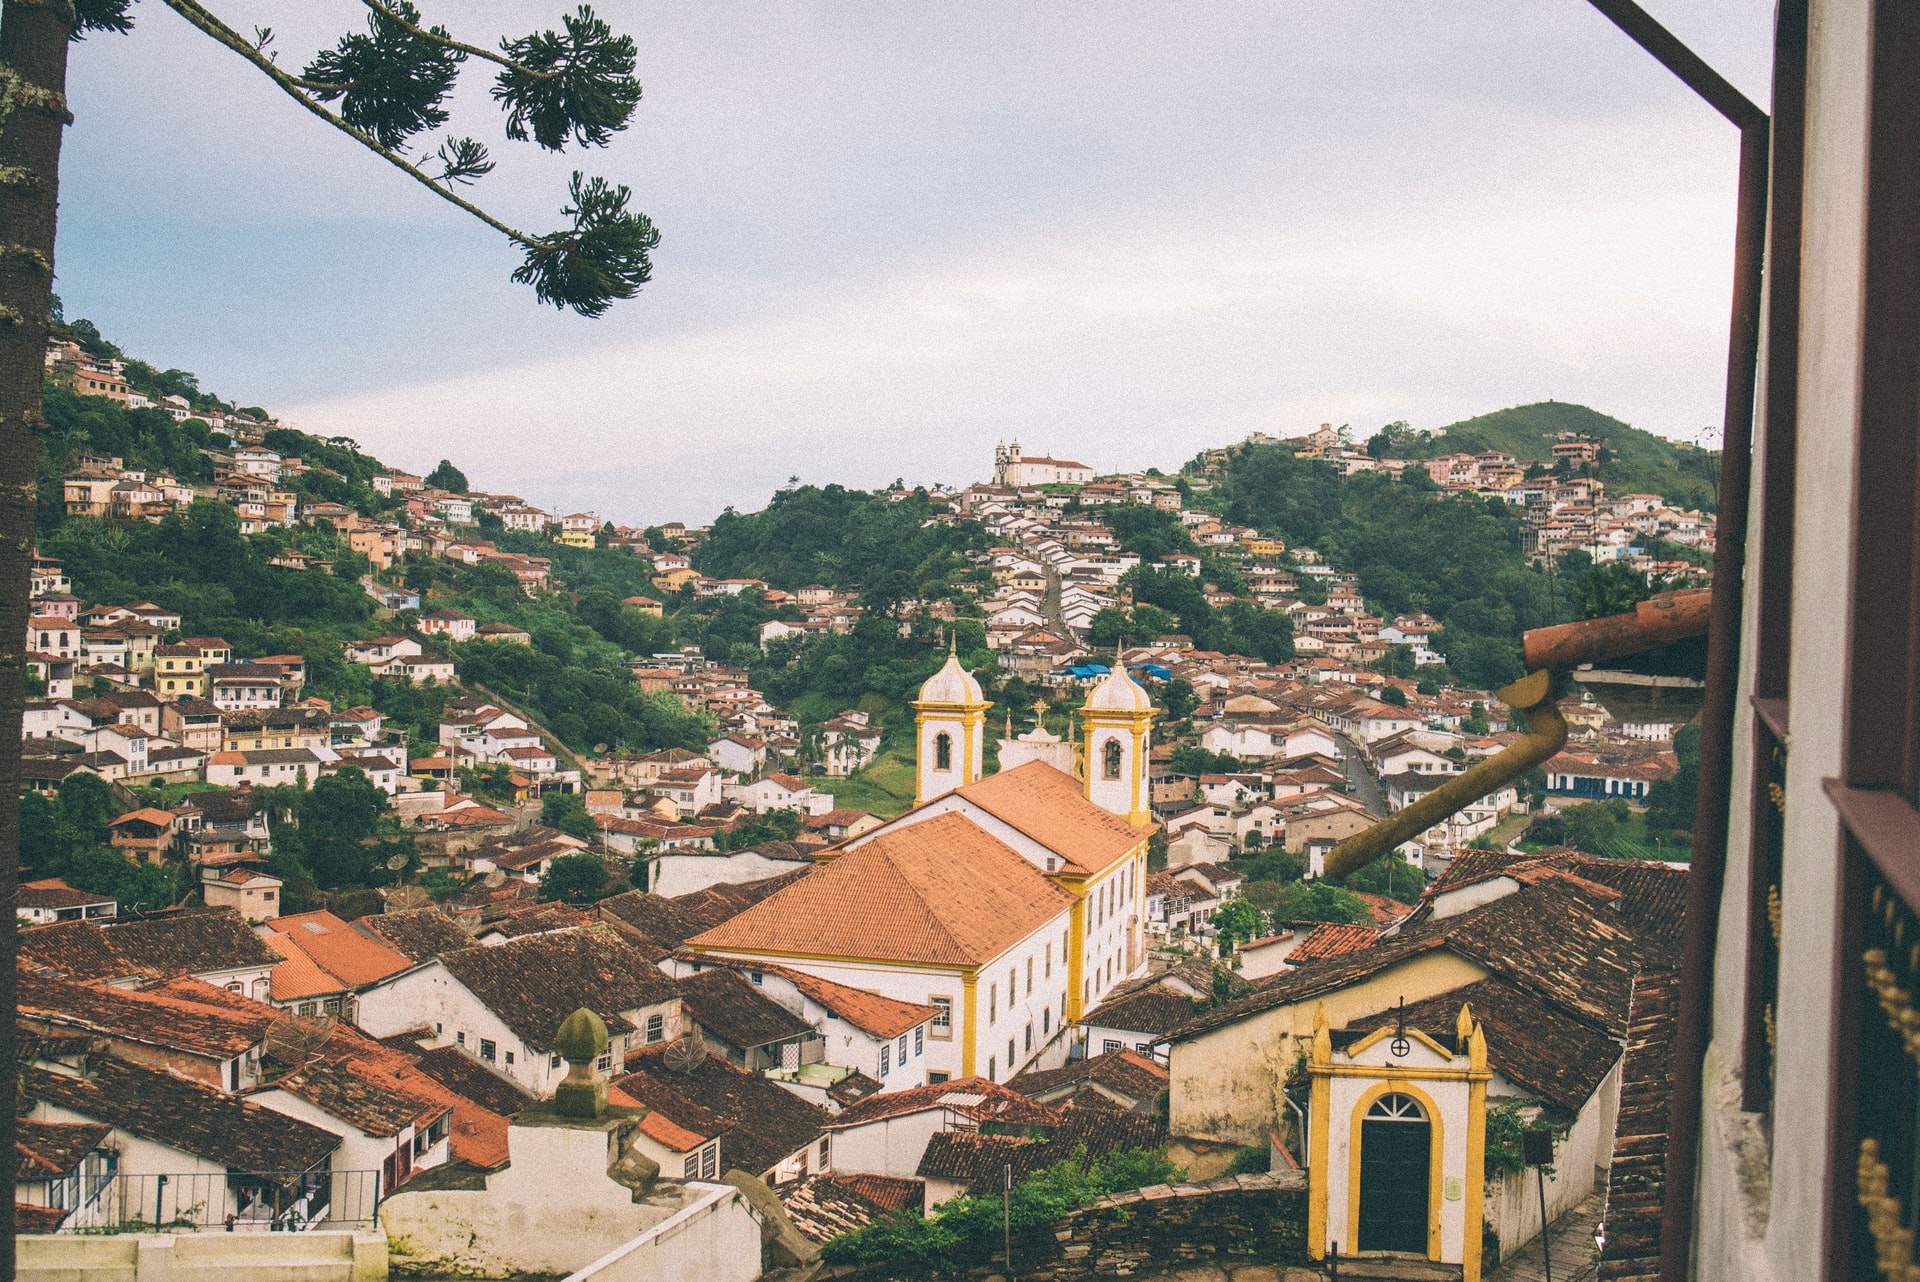 Cidades Históricas de Minas Gerais - Ouro Preto